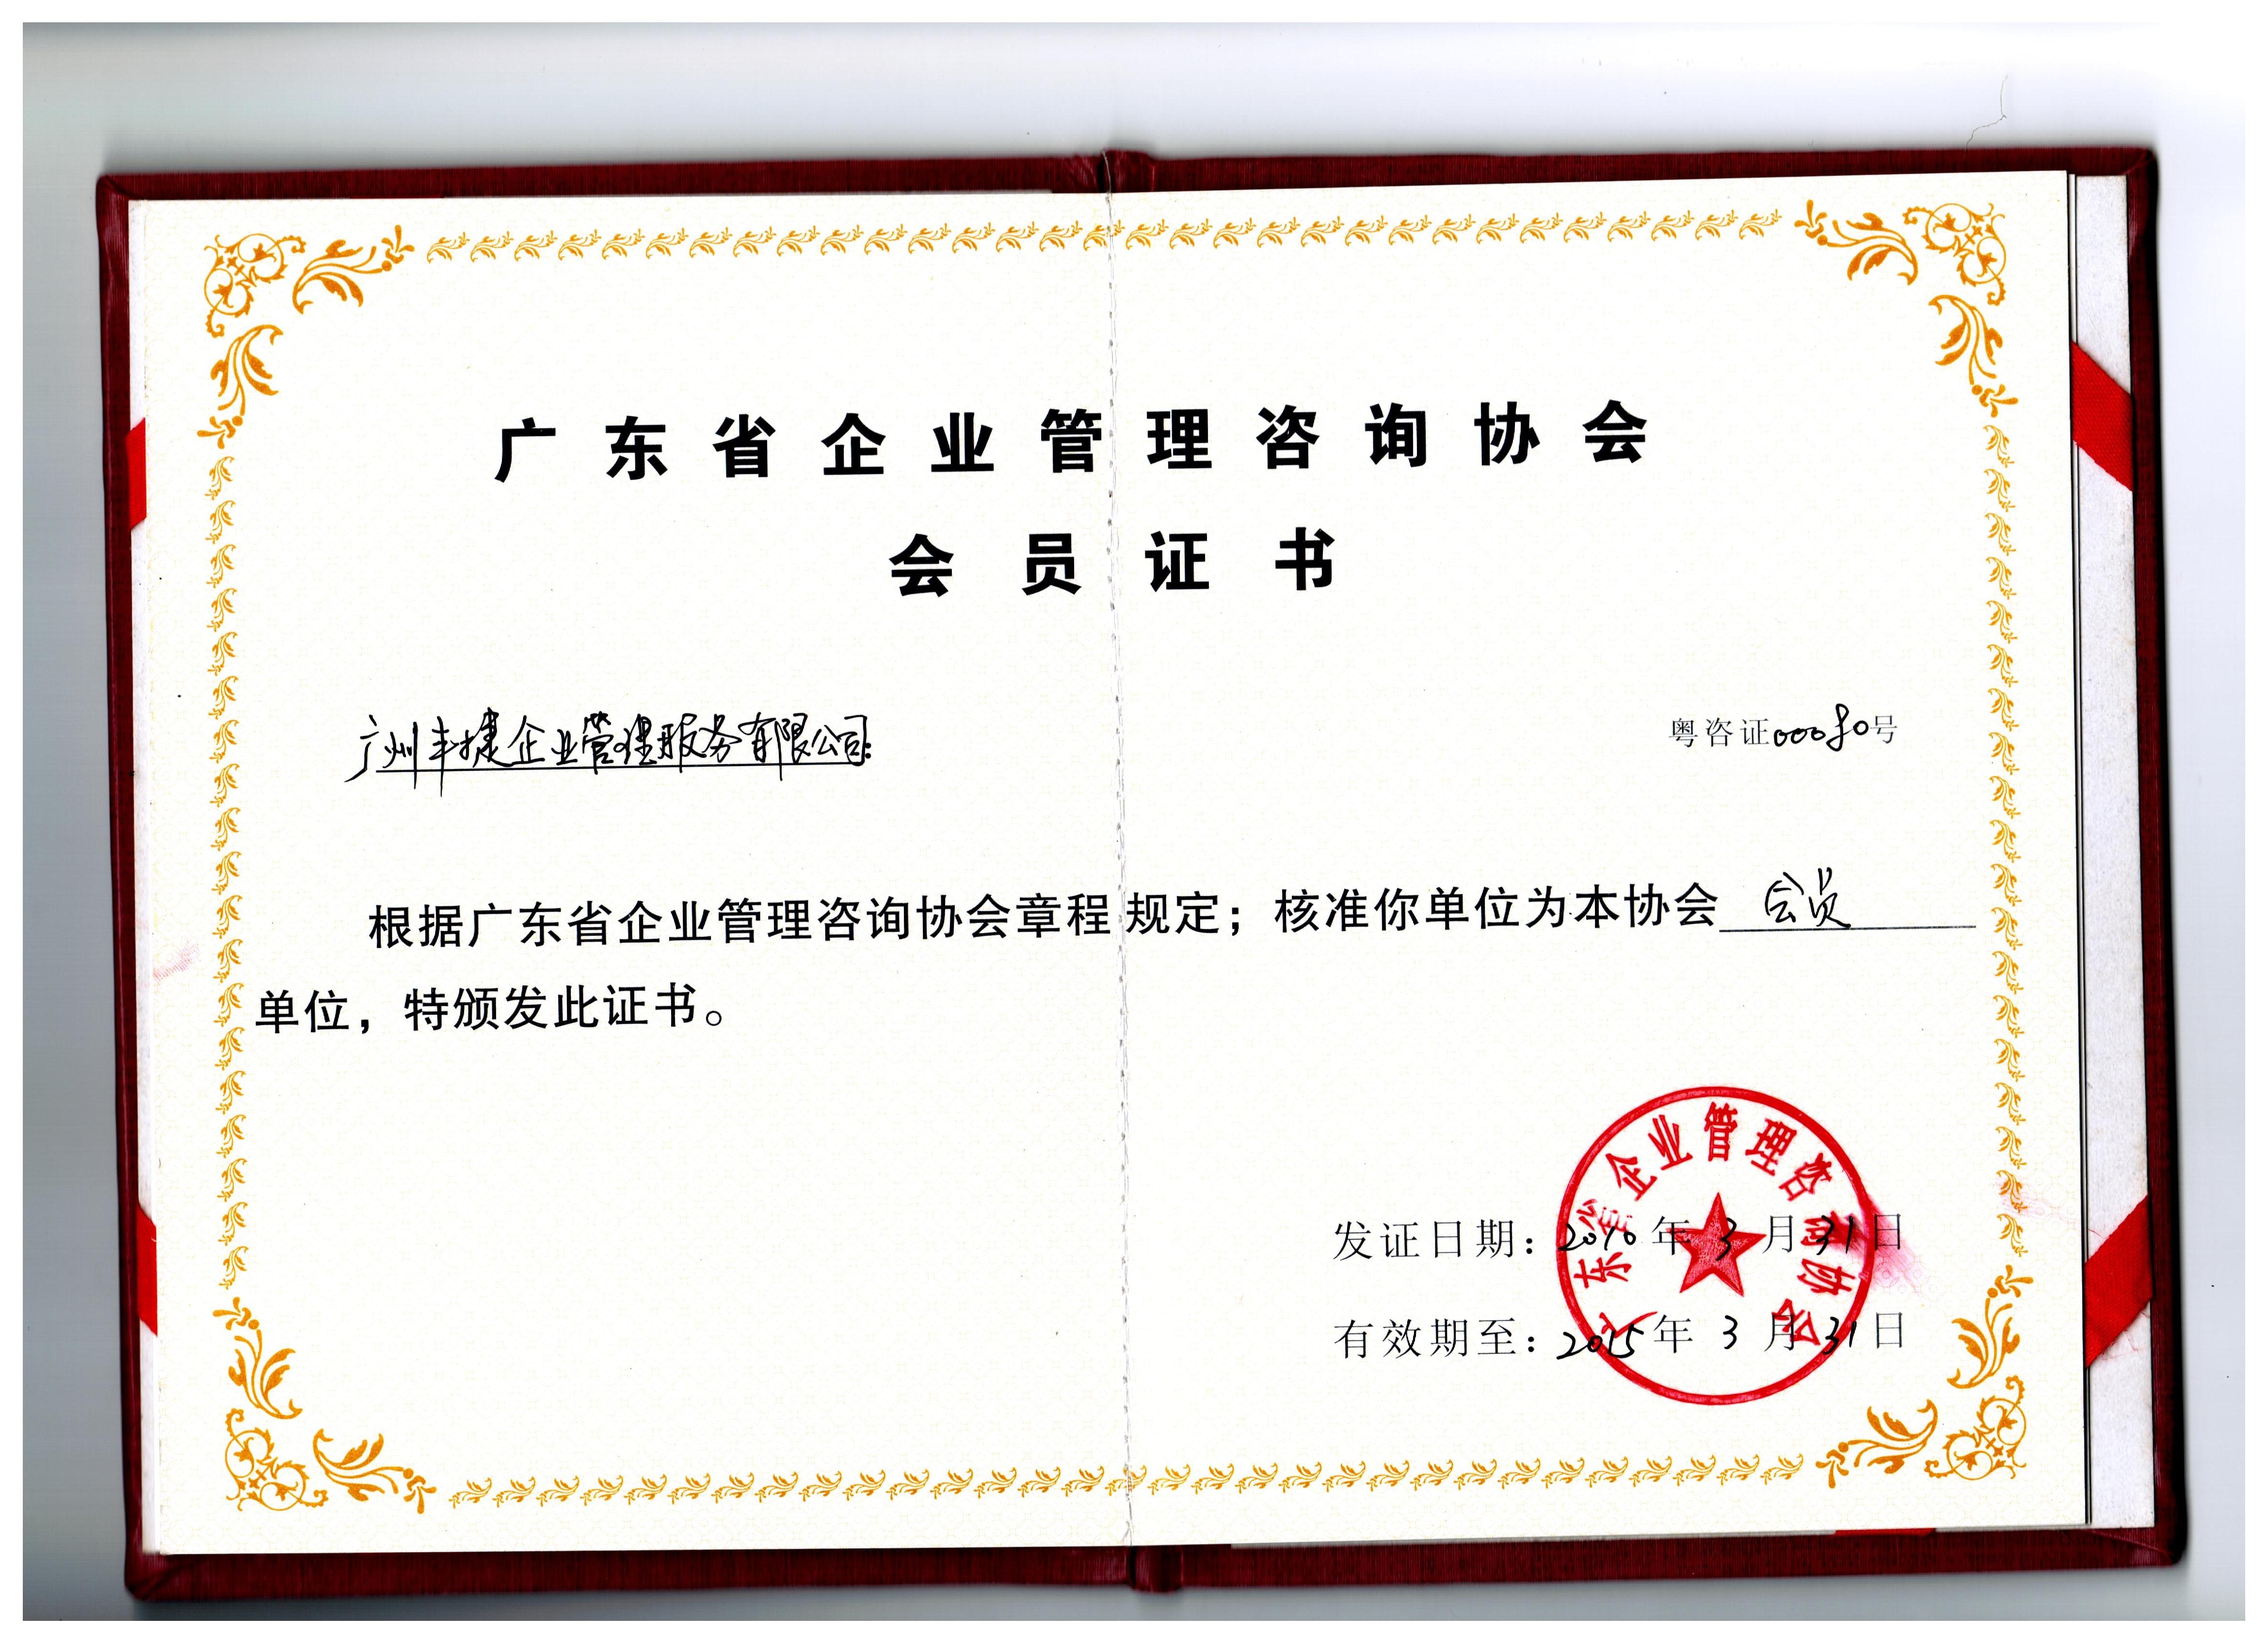 广东省企业管理咨询协会会员单位,丰捷软件